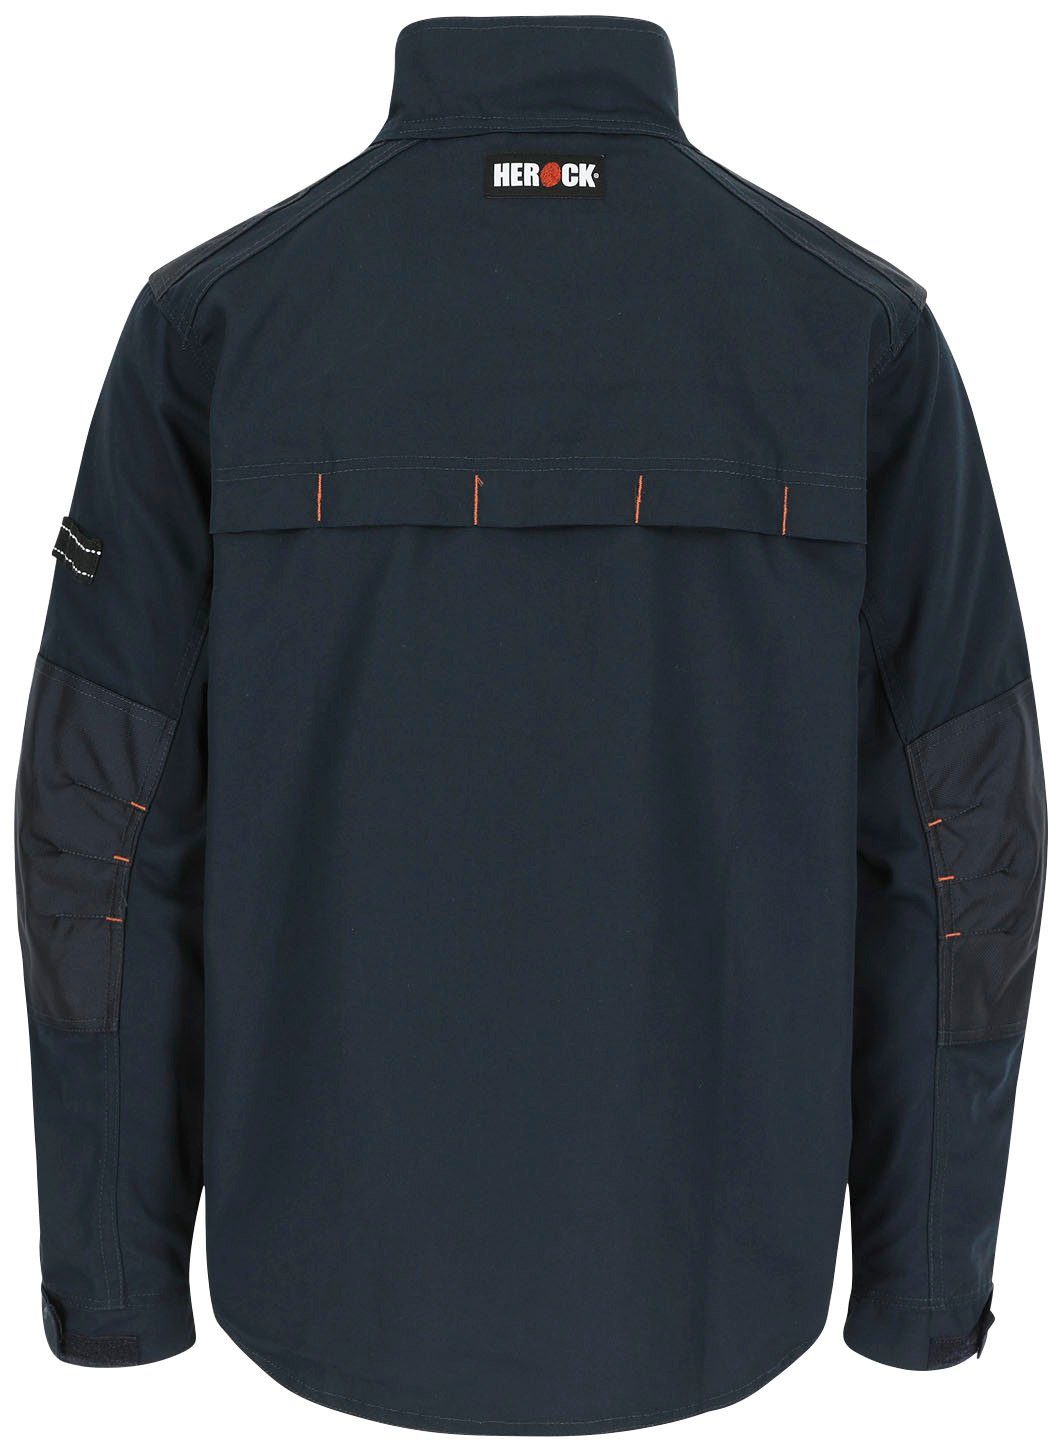 Bündchen Jacke 7 - - verstellbare marine robust Wasserabweisend Arbeitsjacke - Anzar Taschen Herock